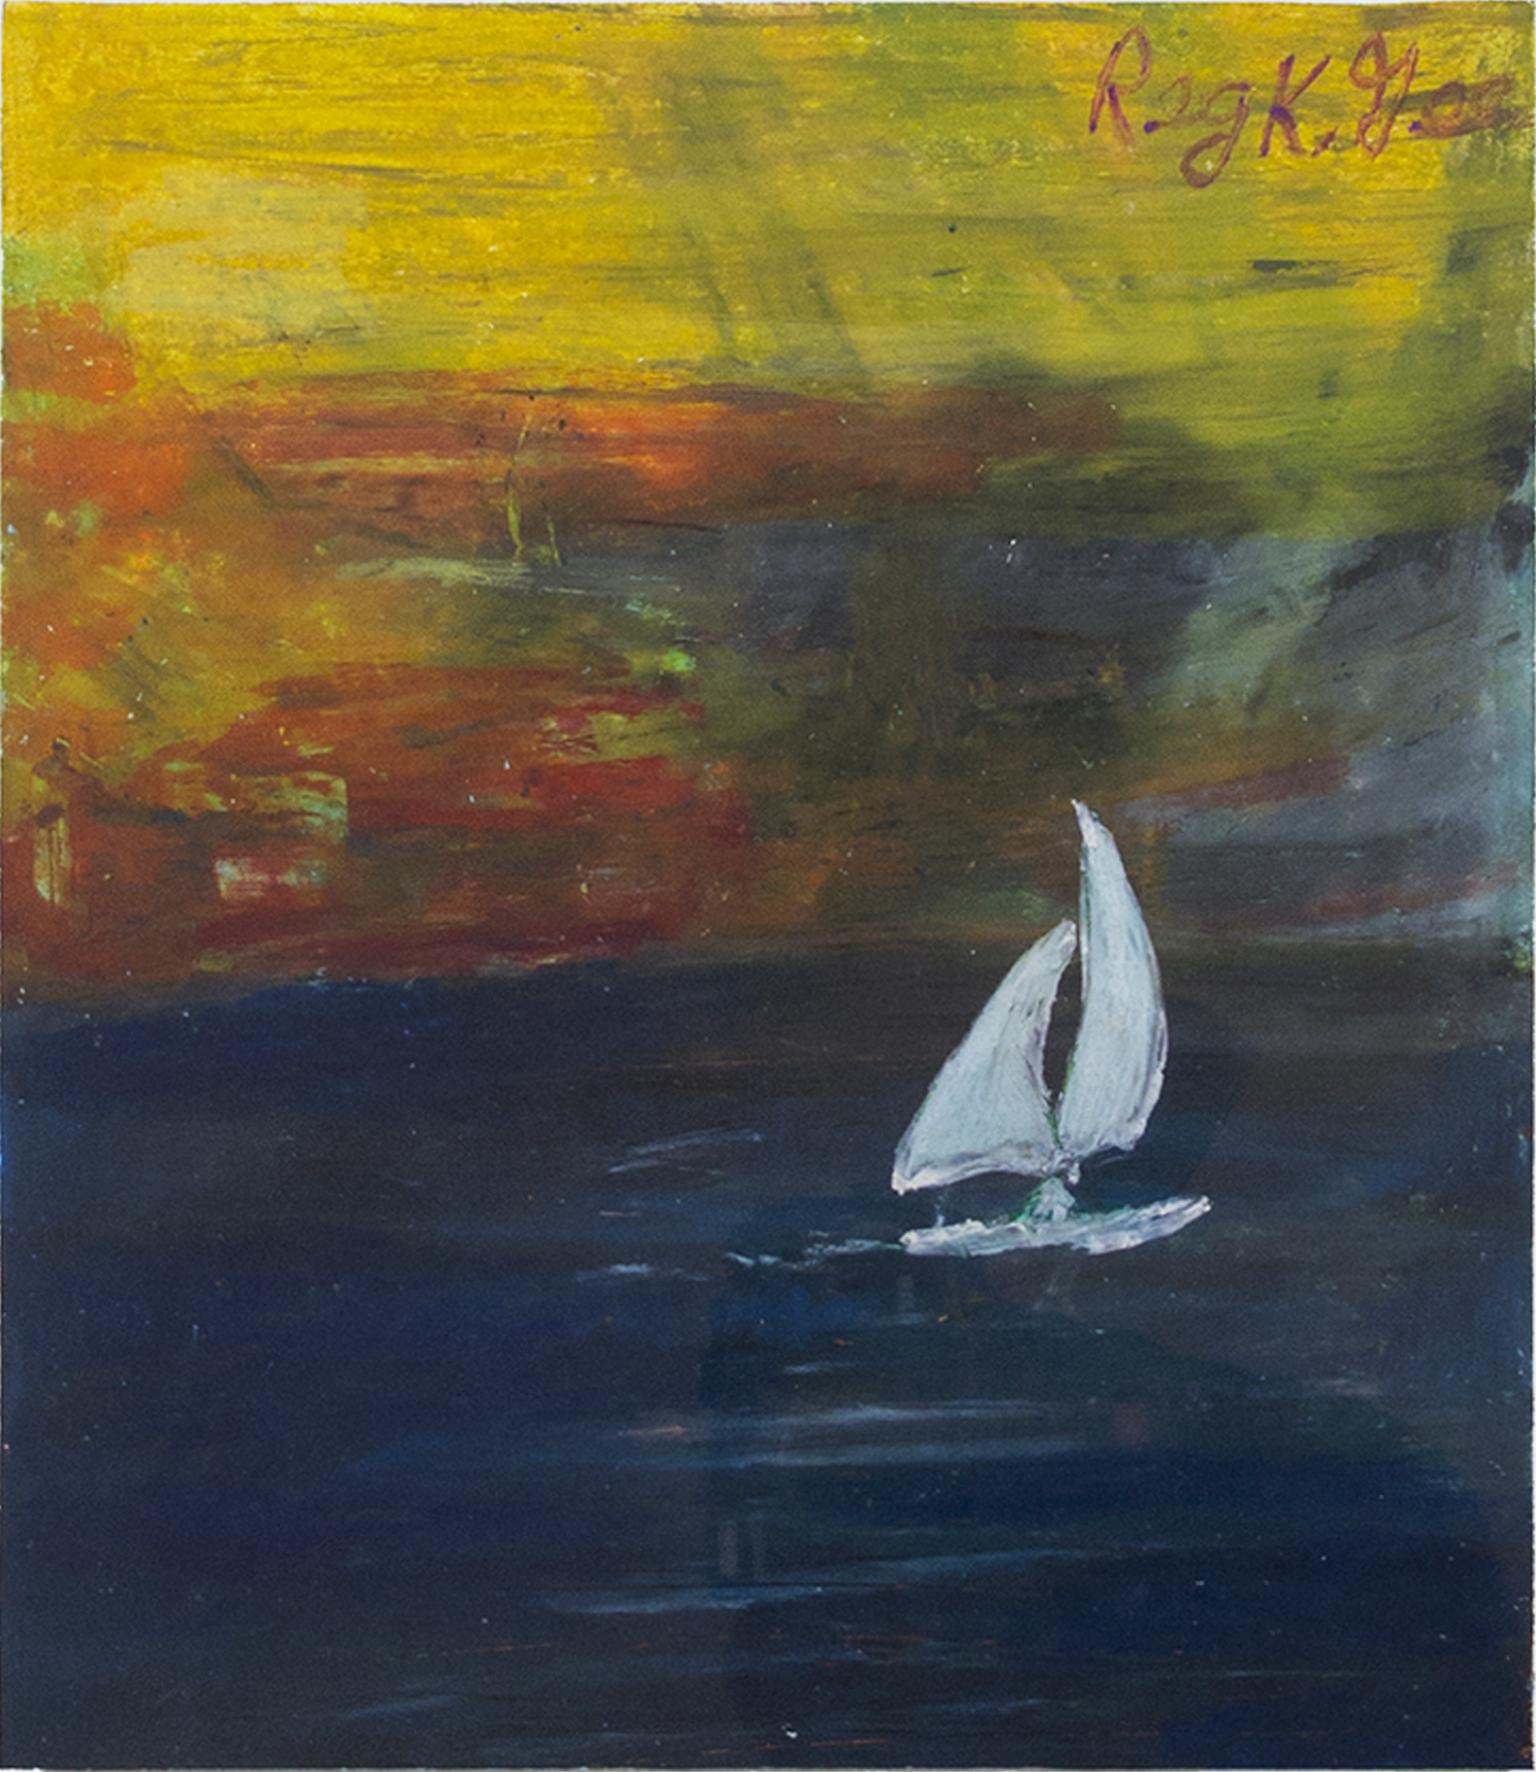 "Coasting Sailboat" ist eine Original-Pastellzeichnung von Reginald K. Gee. Der Künstler hat das Werk unten rechts signiert. Es zeigt ein weißes Segelboot auf einem dunklen Meer mit einem bunten Hintergrund. 

Kunstwerk Größe: 12" x 9"
Rahmengröße: